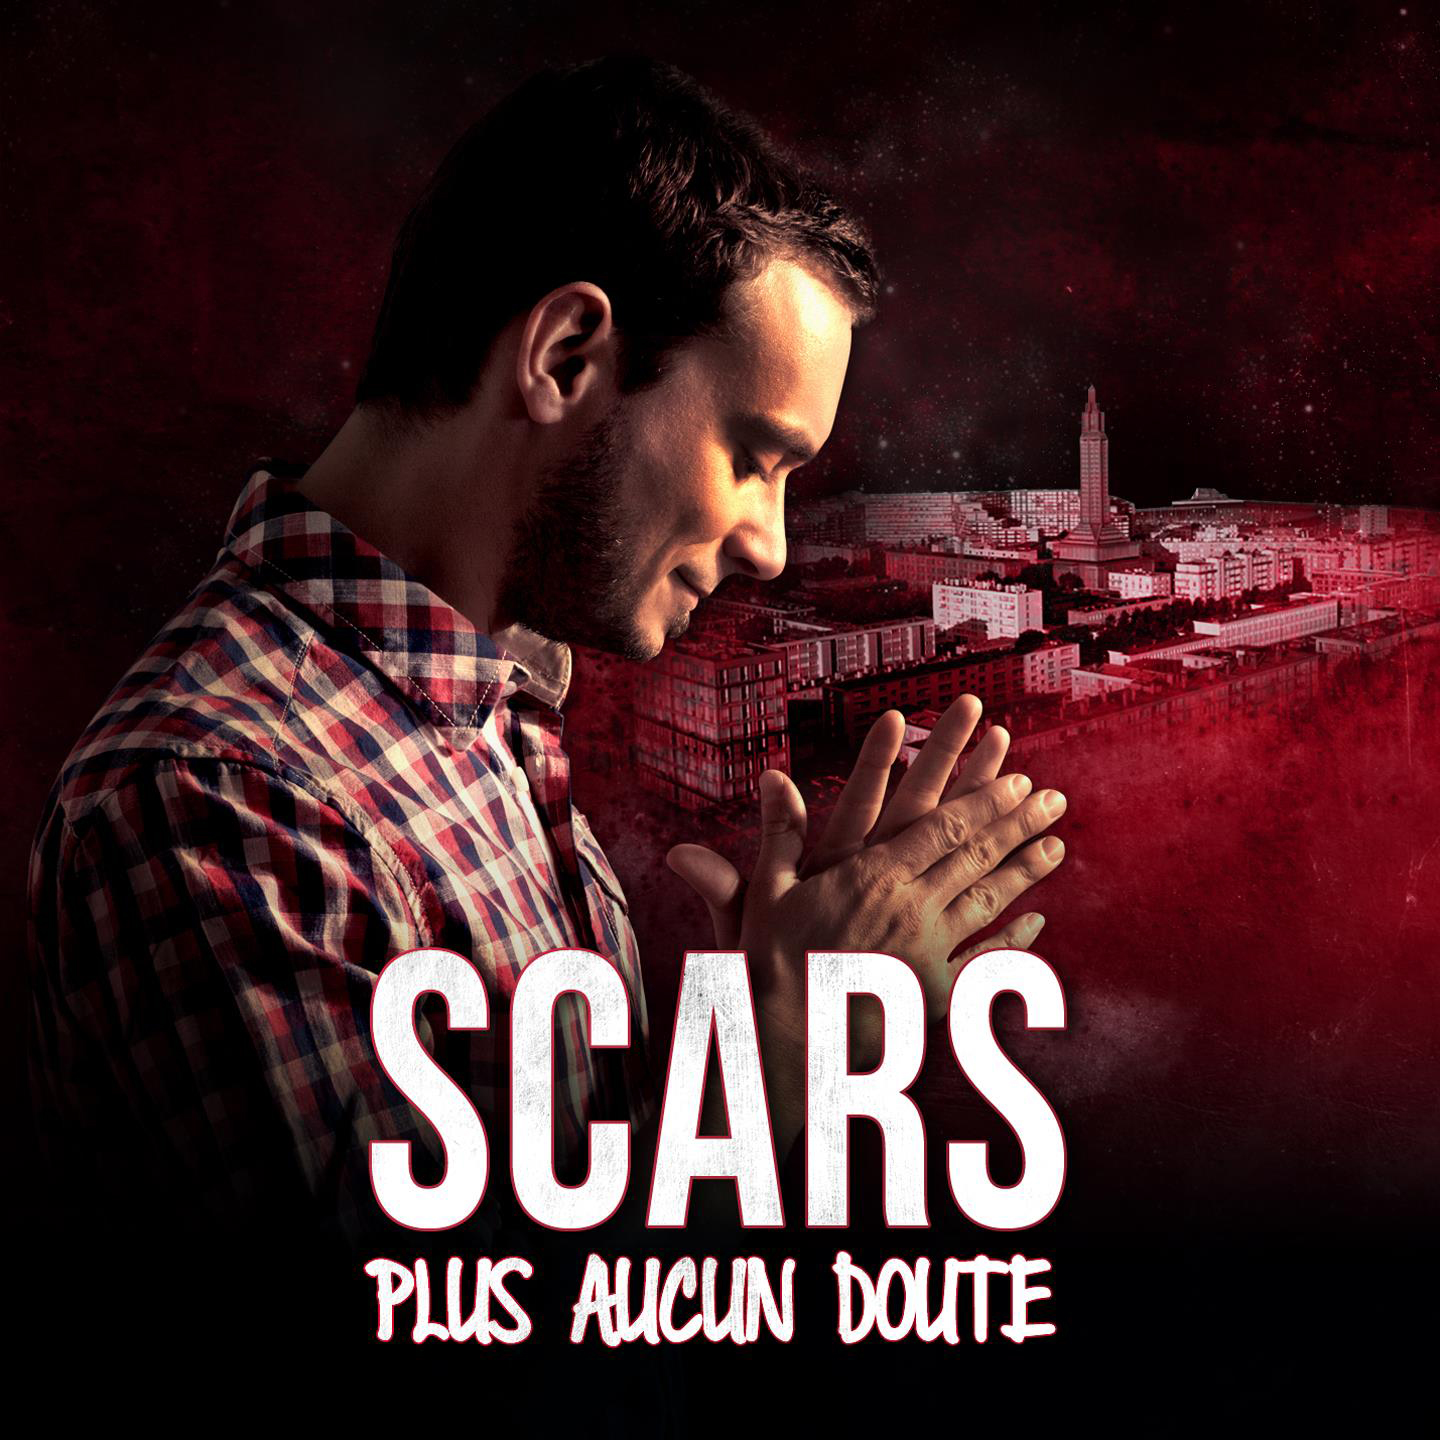 Cover de l'album de Scars - Plus aucun doute. Réalisé par Loseou